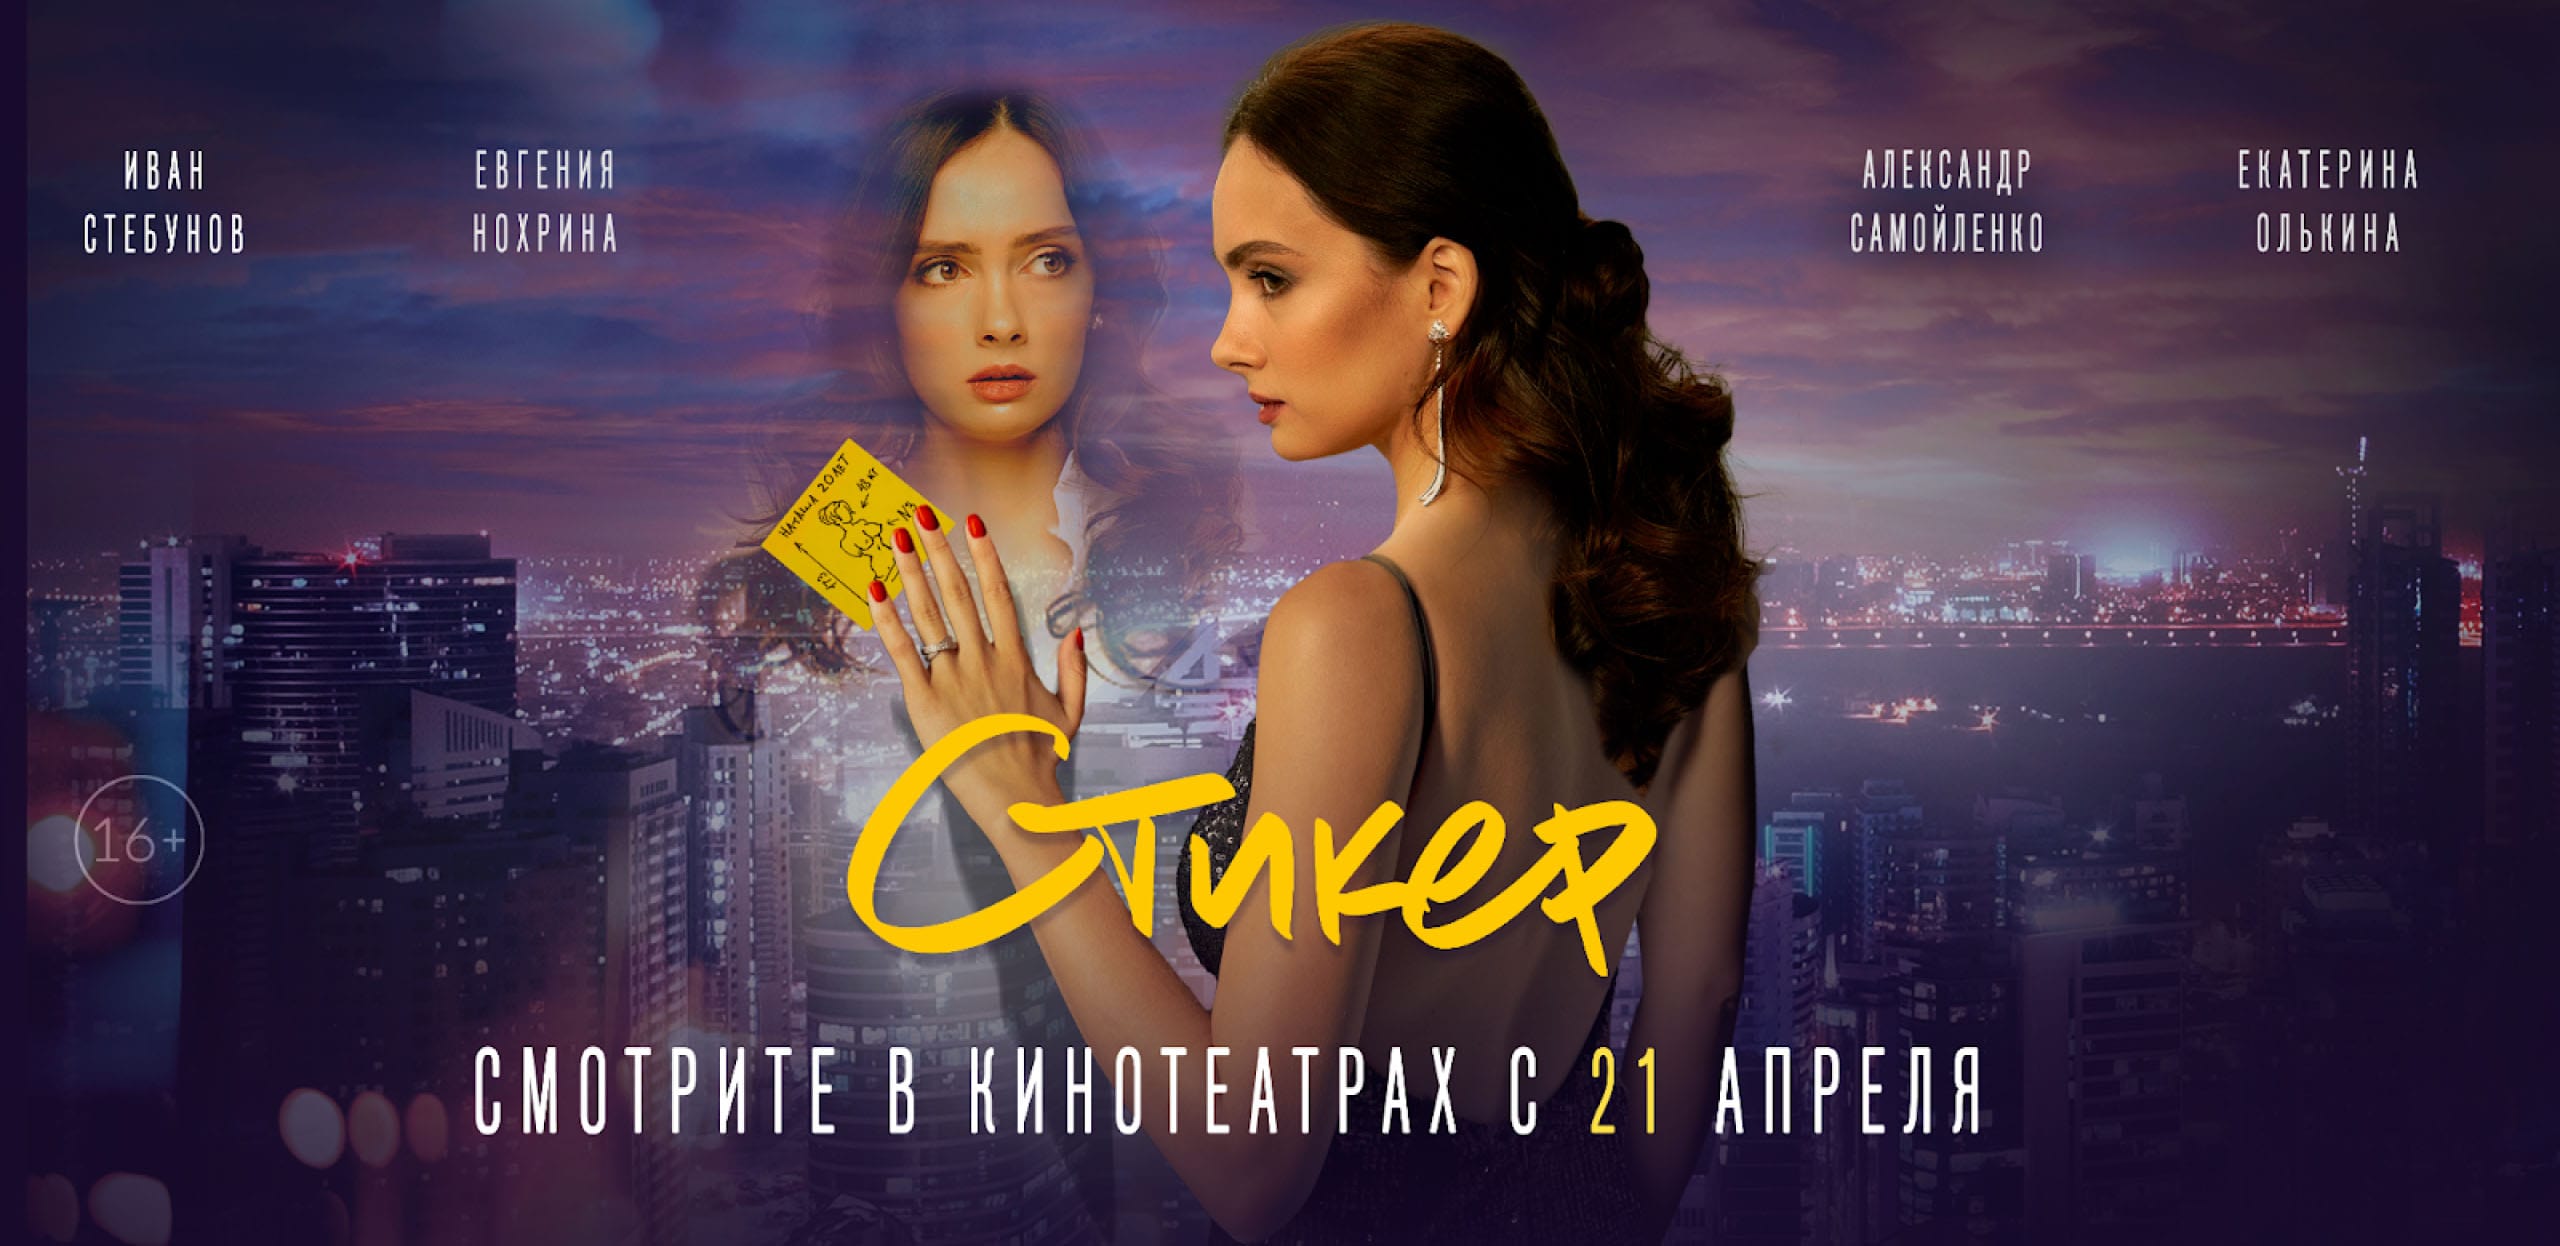 Кейс: как рекламировать кино в Одноклассниках со стоимостью контакта на 50% ниже, чем в других соцсетях